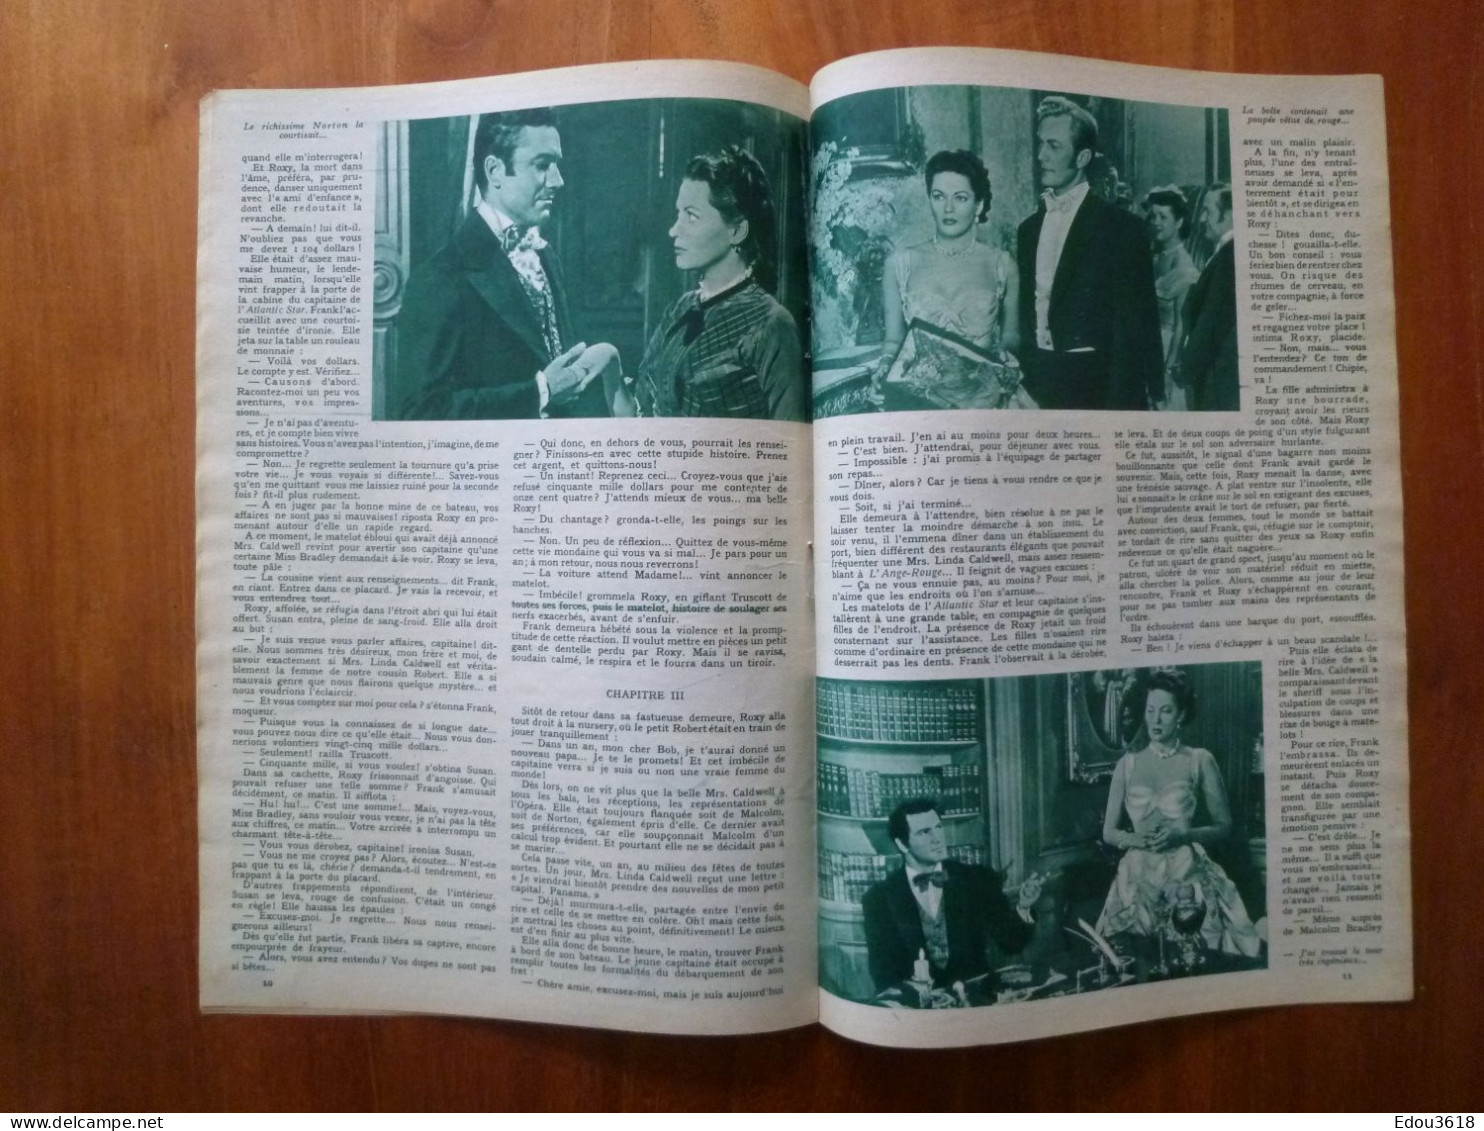 Revue Film Complet n° 363 Une fille à bagarres avec Yvonne de Carlo Rock Hudson Richard Denning 1953 Maria Riquelme